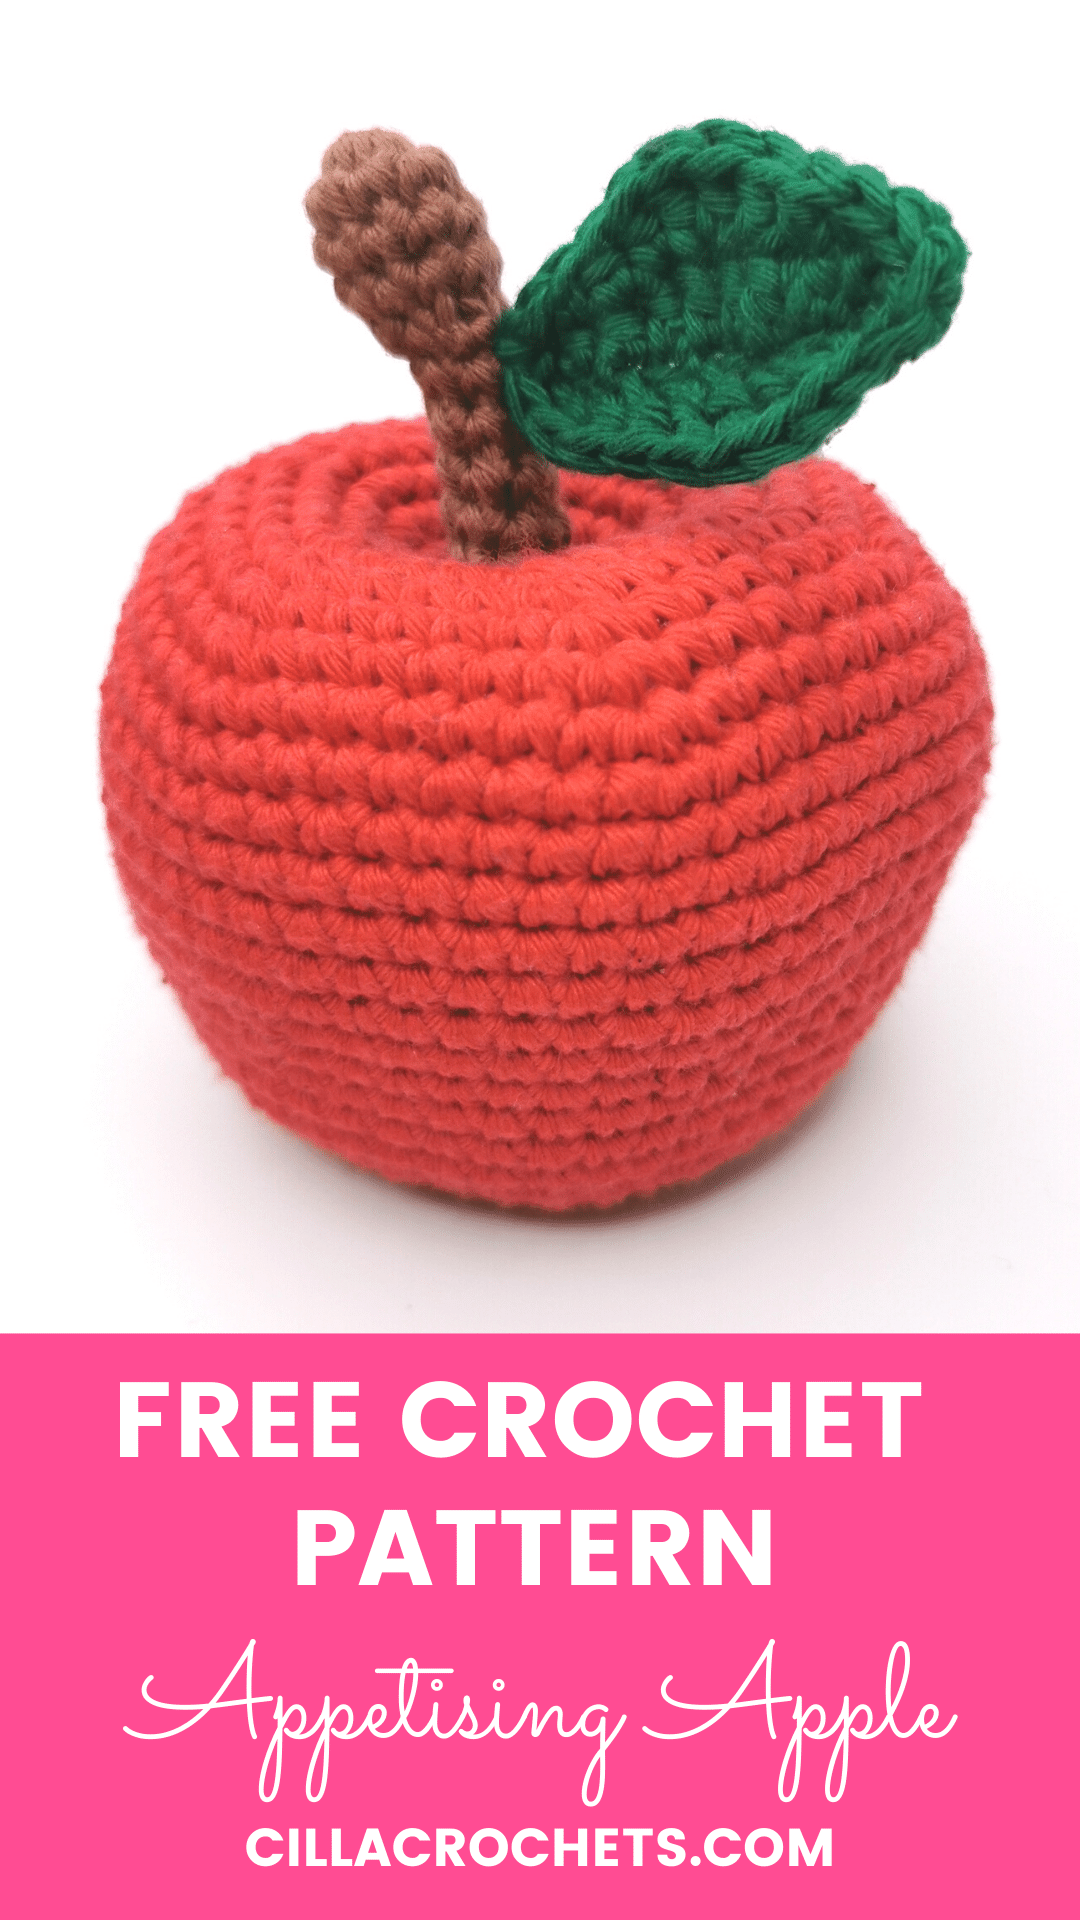 Free Crochet Apple Pattern - Grace and Yarn